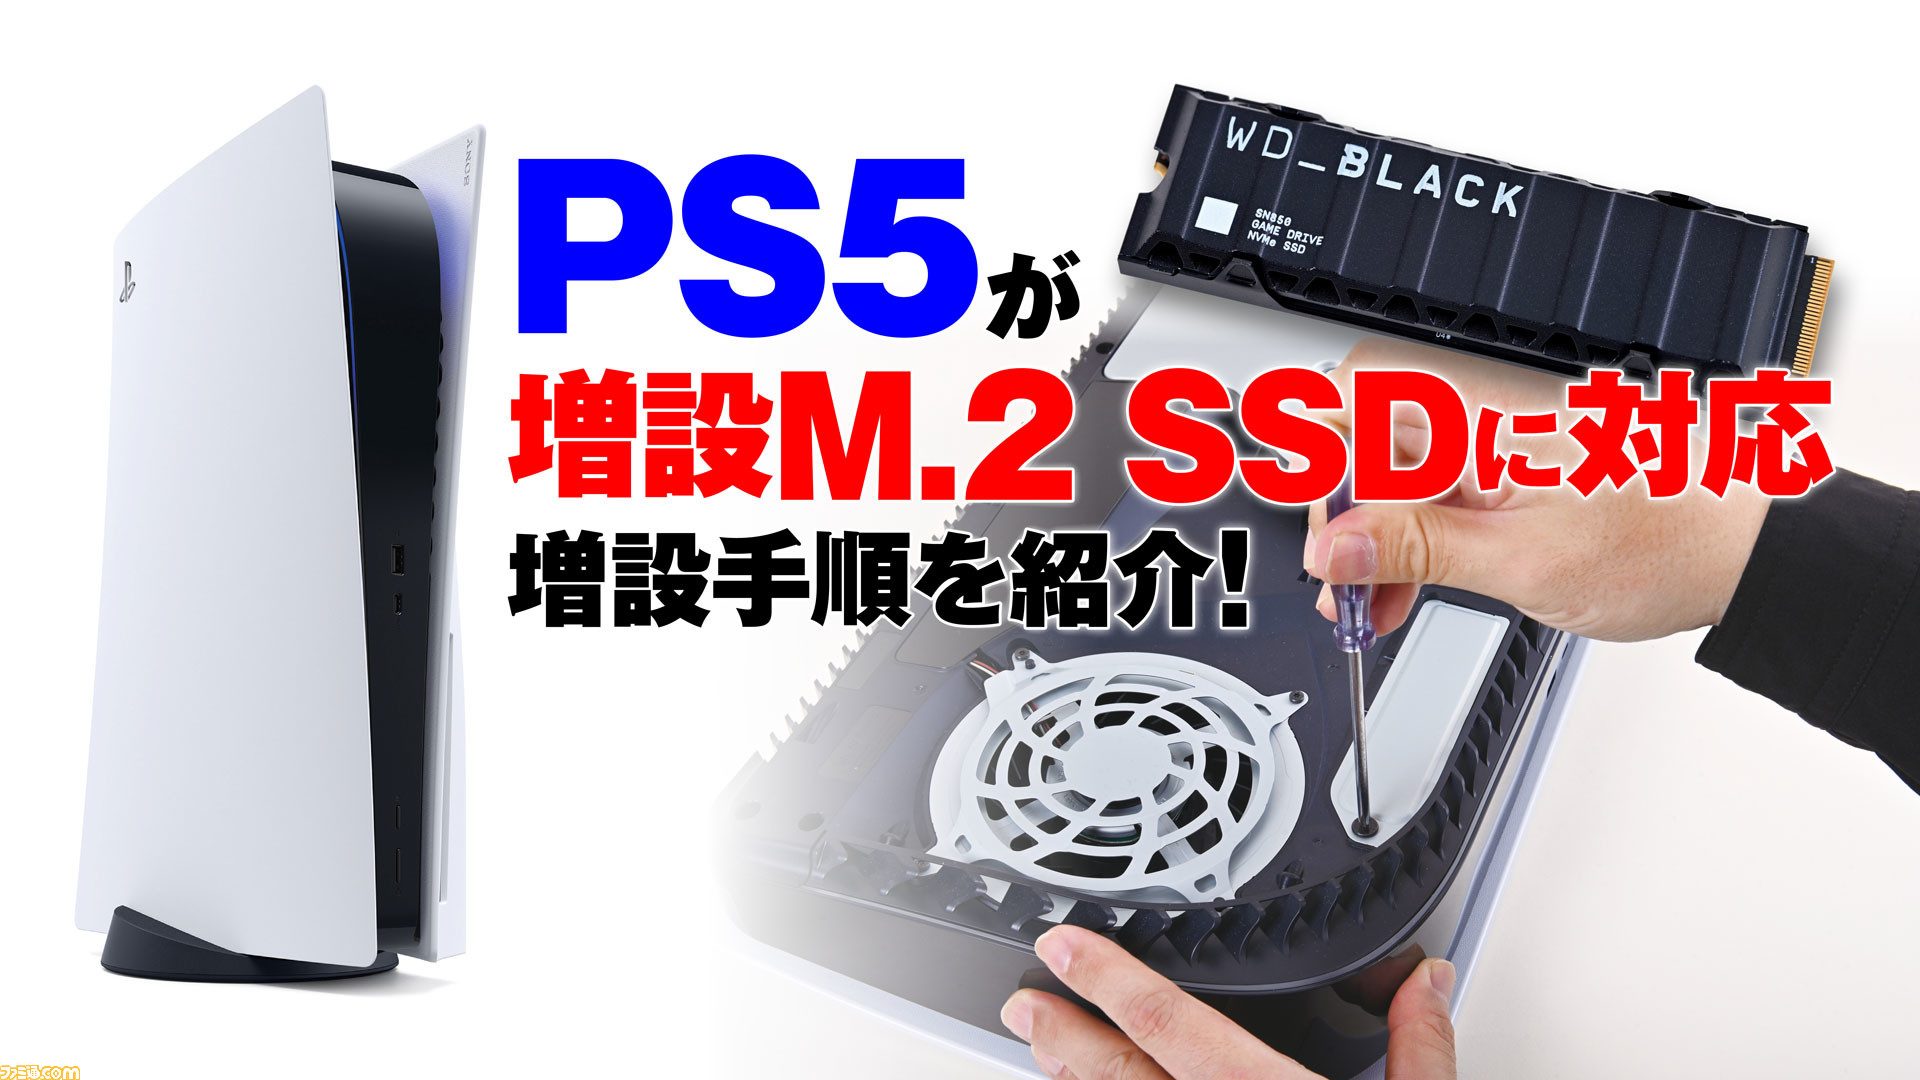 PS5がついに増設M.2 SSDに対応!! Western Digital製の最新SSDを使って